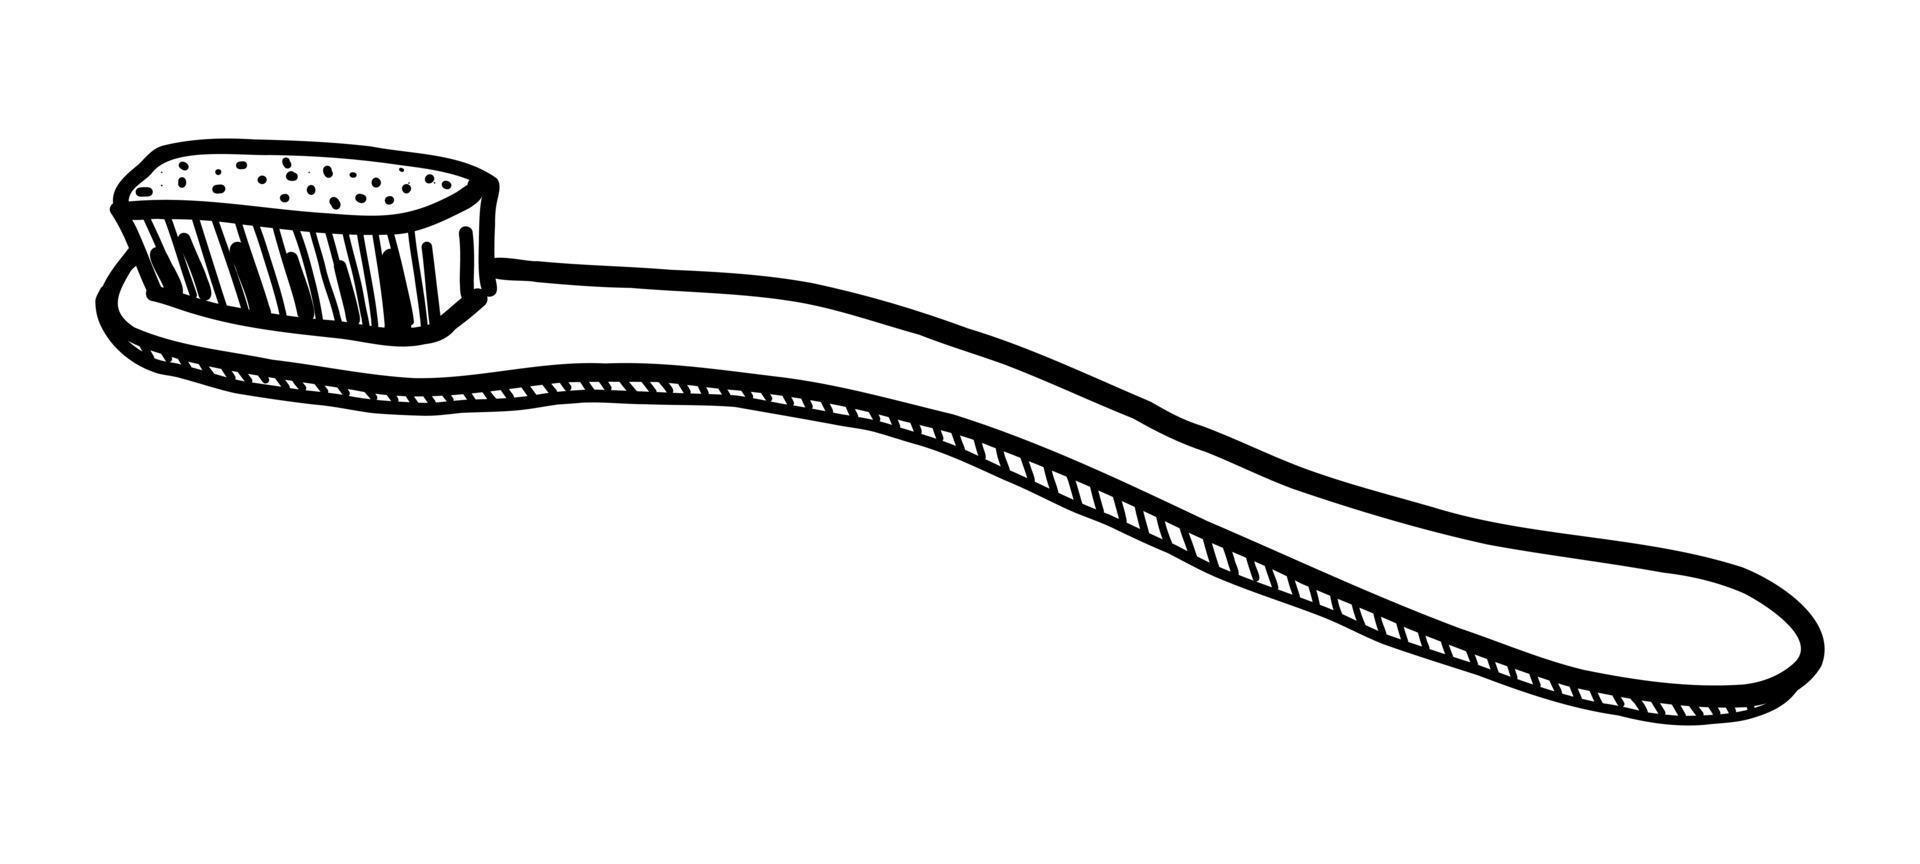 vectorillustratie van een geïsoleerde tandenborstel op een witte achtergrond. doodle tekenen met de hand vector